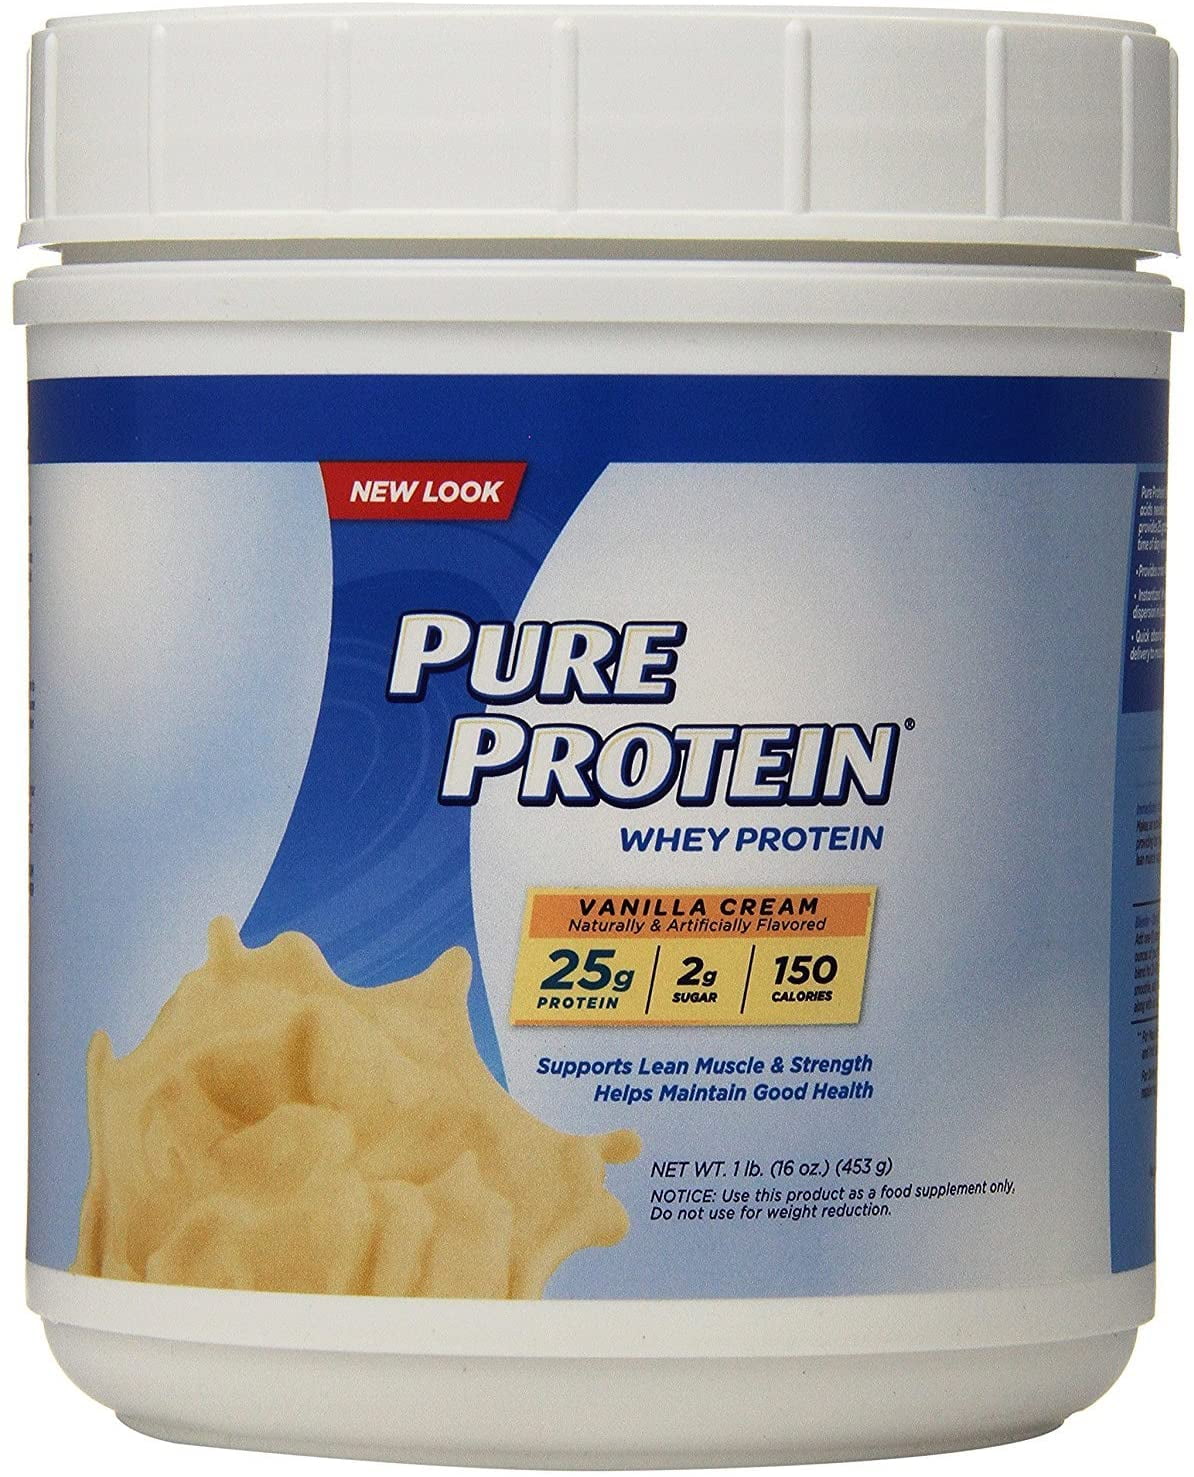 Чистый протеин. Протеин пуре 1. Pure Protein Whey. Protein порошок.